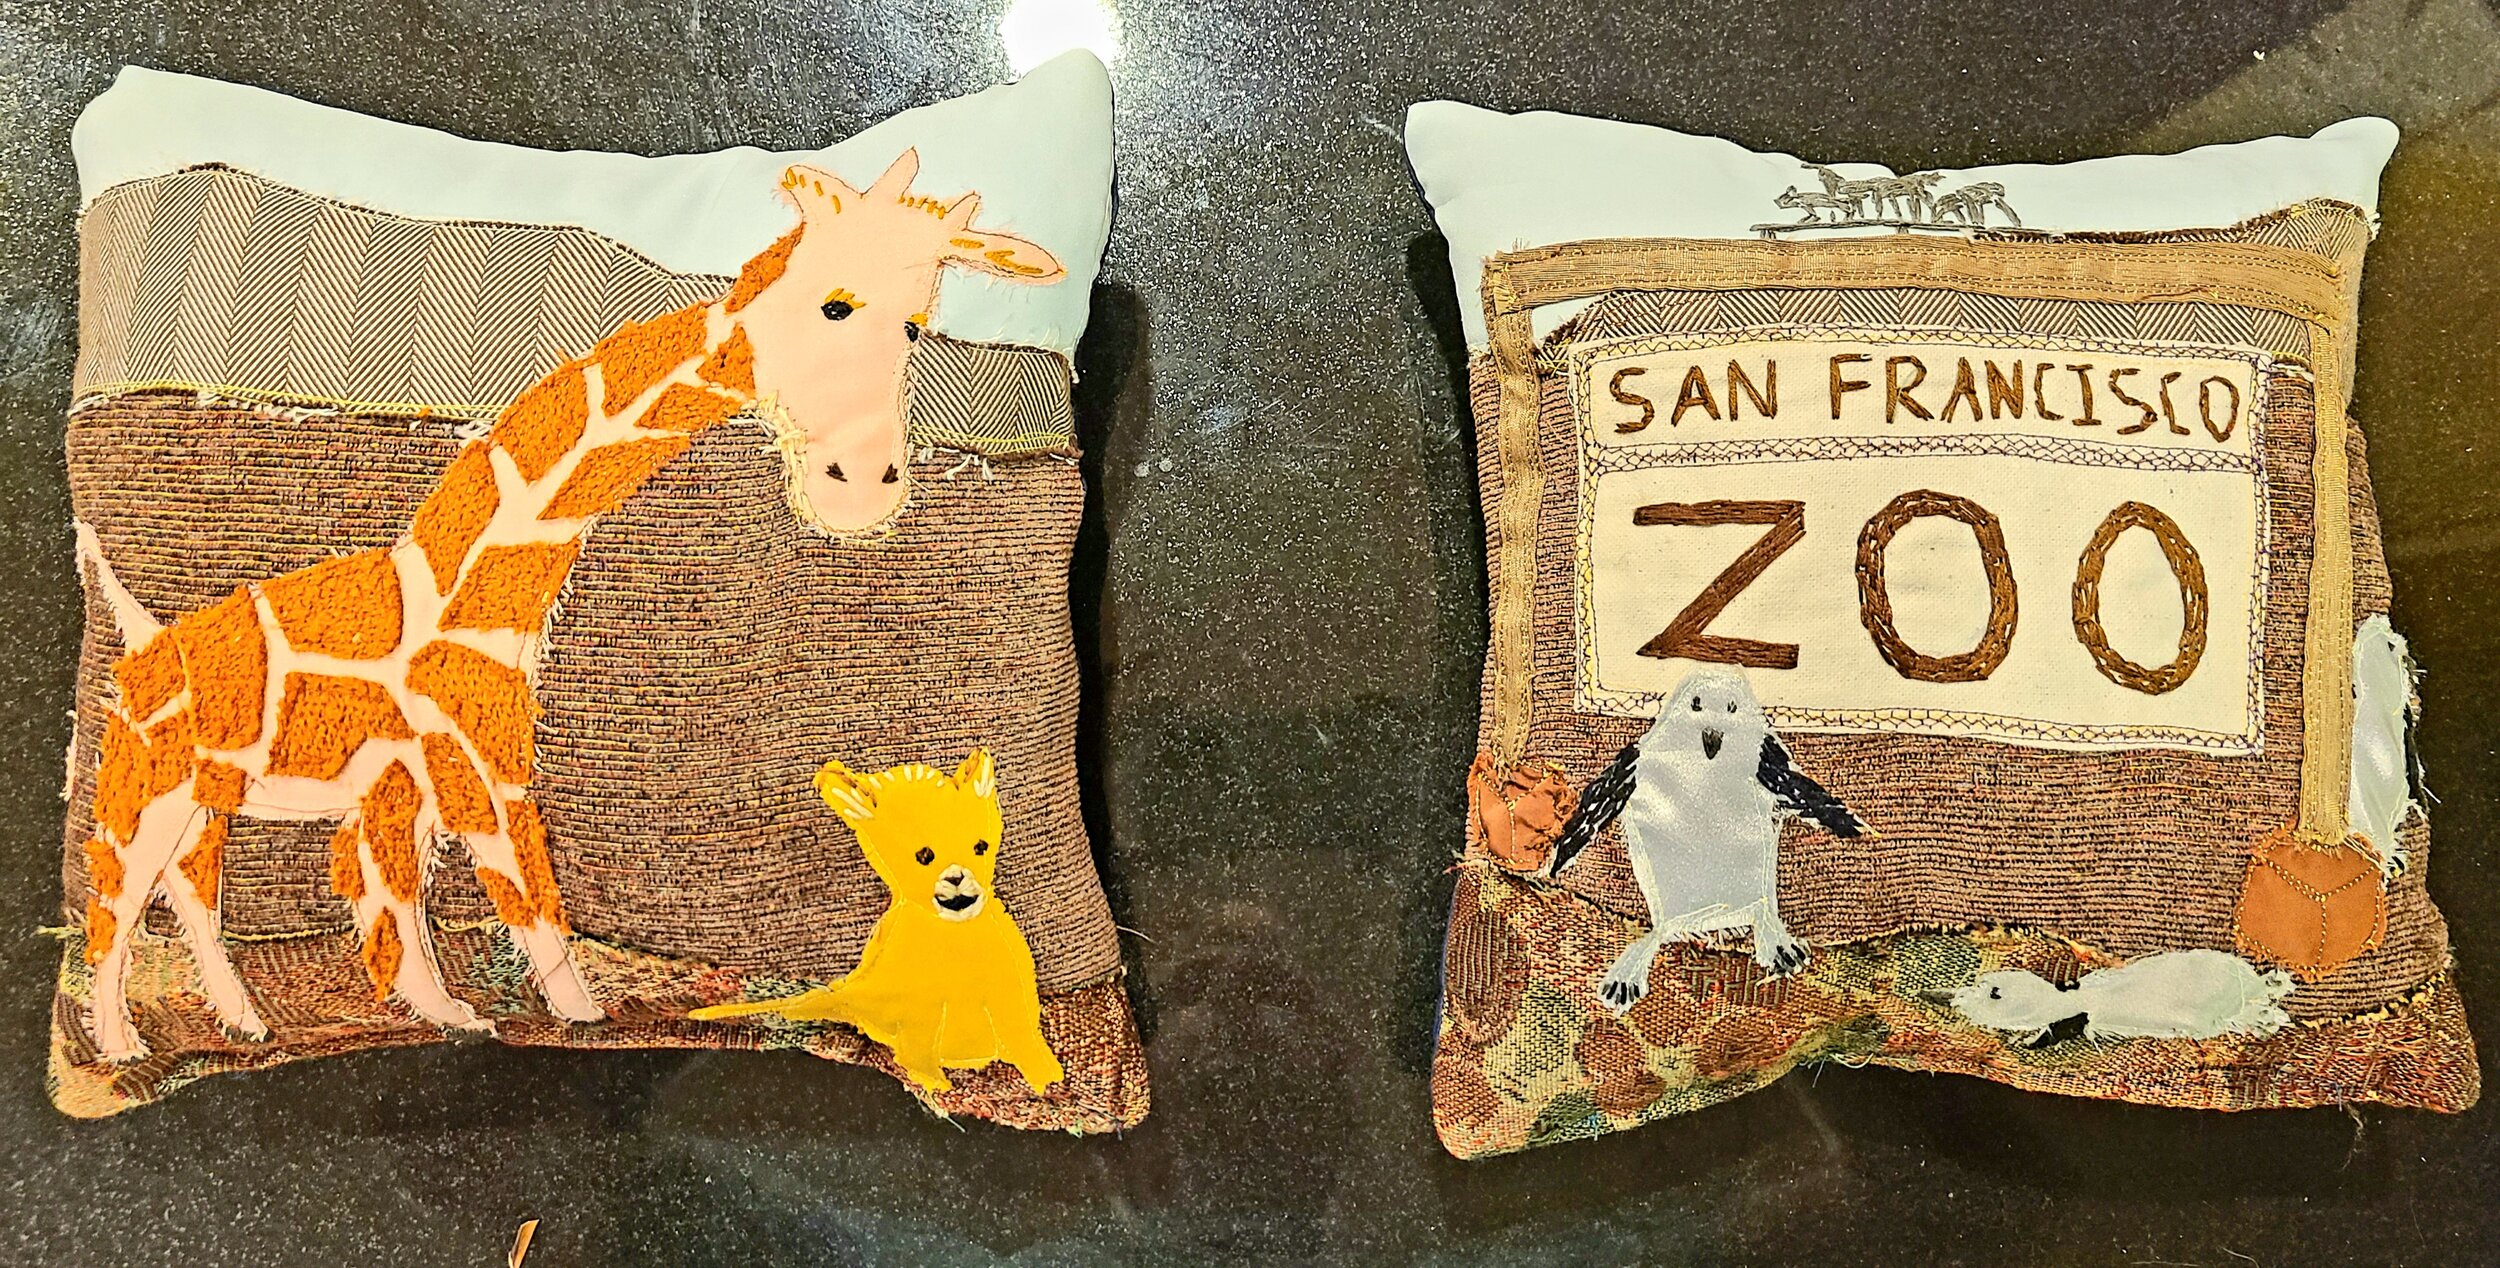 San Francisco Zoo pillows.jpg